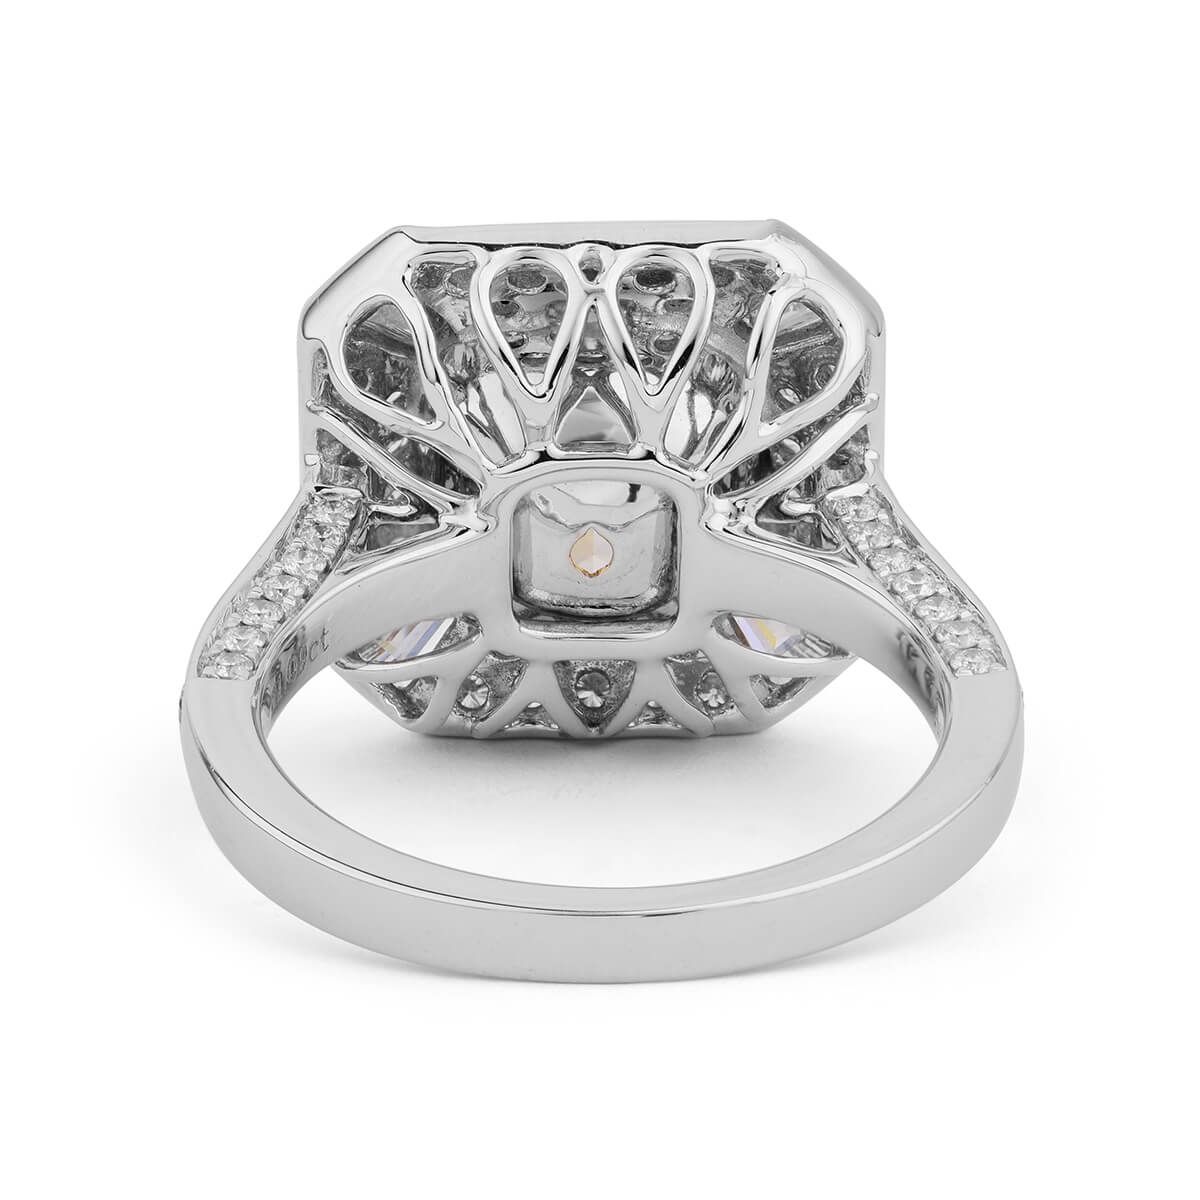 Fancy Light Yellow Diamond Ring, 1.09 Carat, Cushion shape, GIA Certified, 1209155985